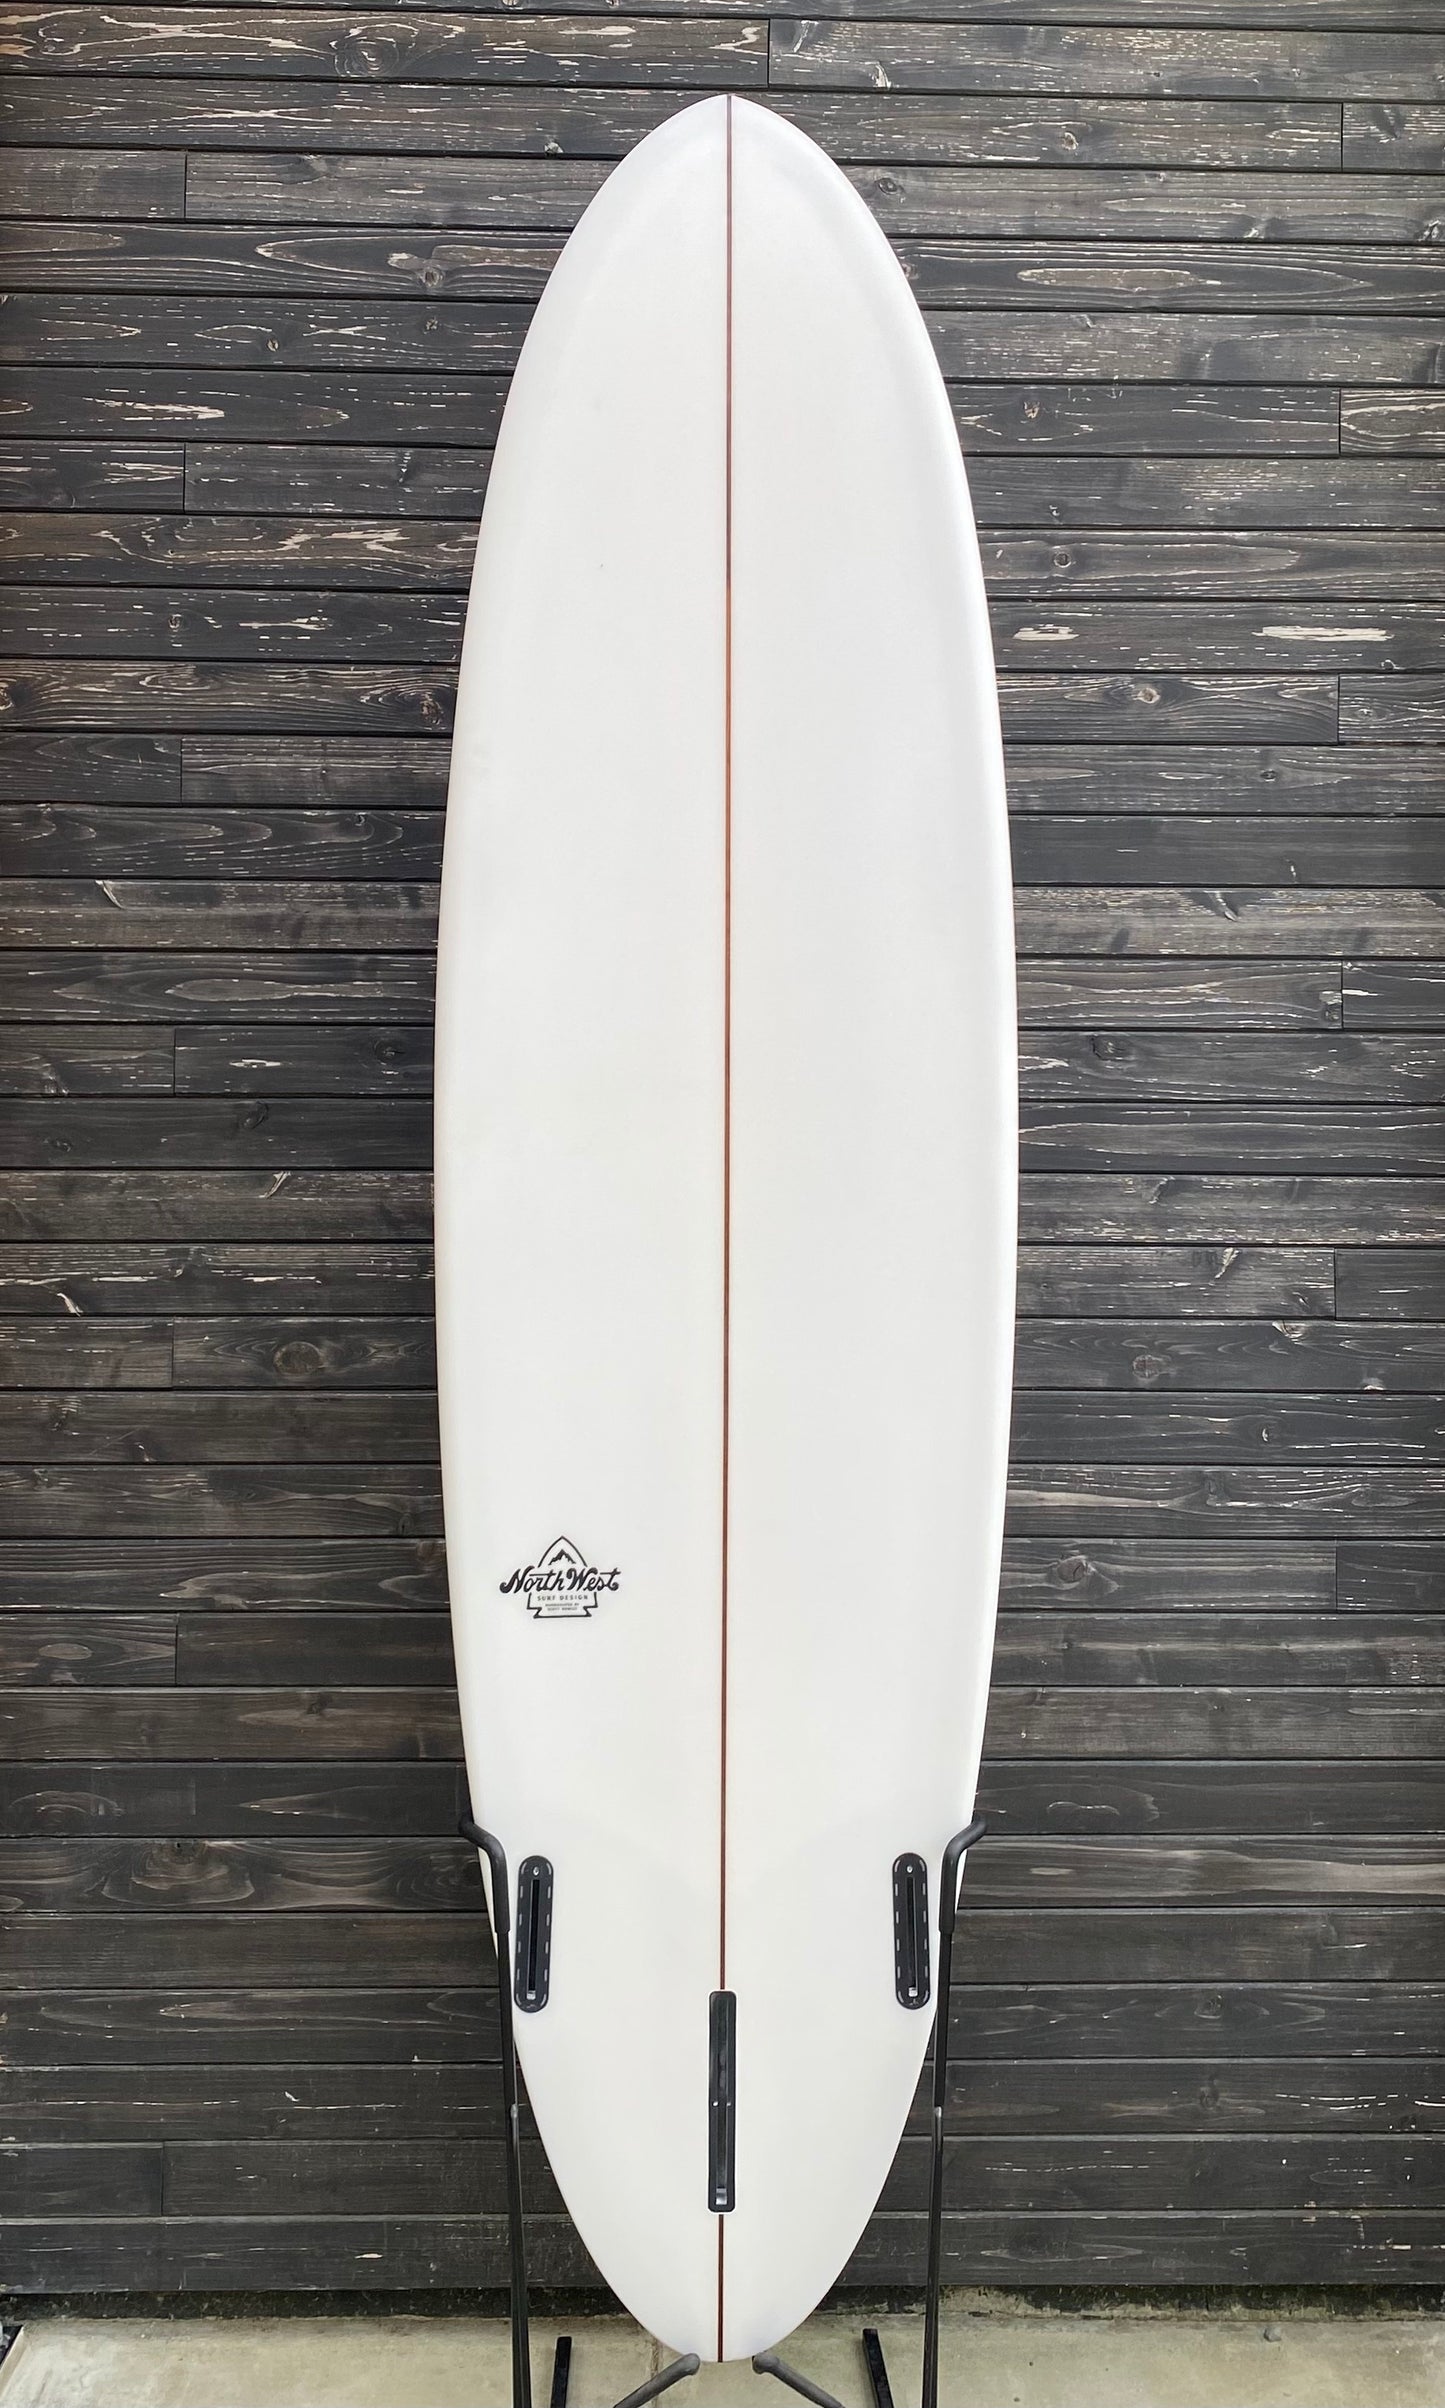 NWSD 7.2 Seahawk Surfboard